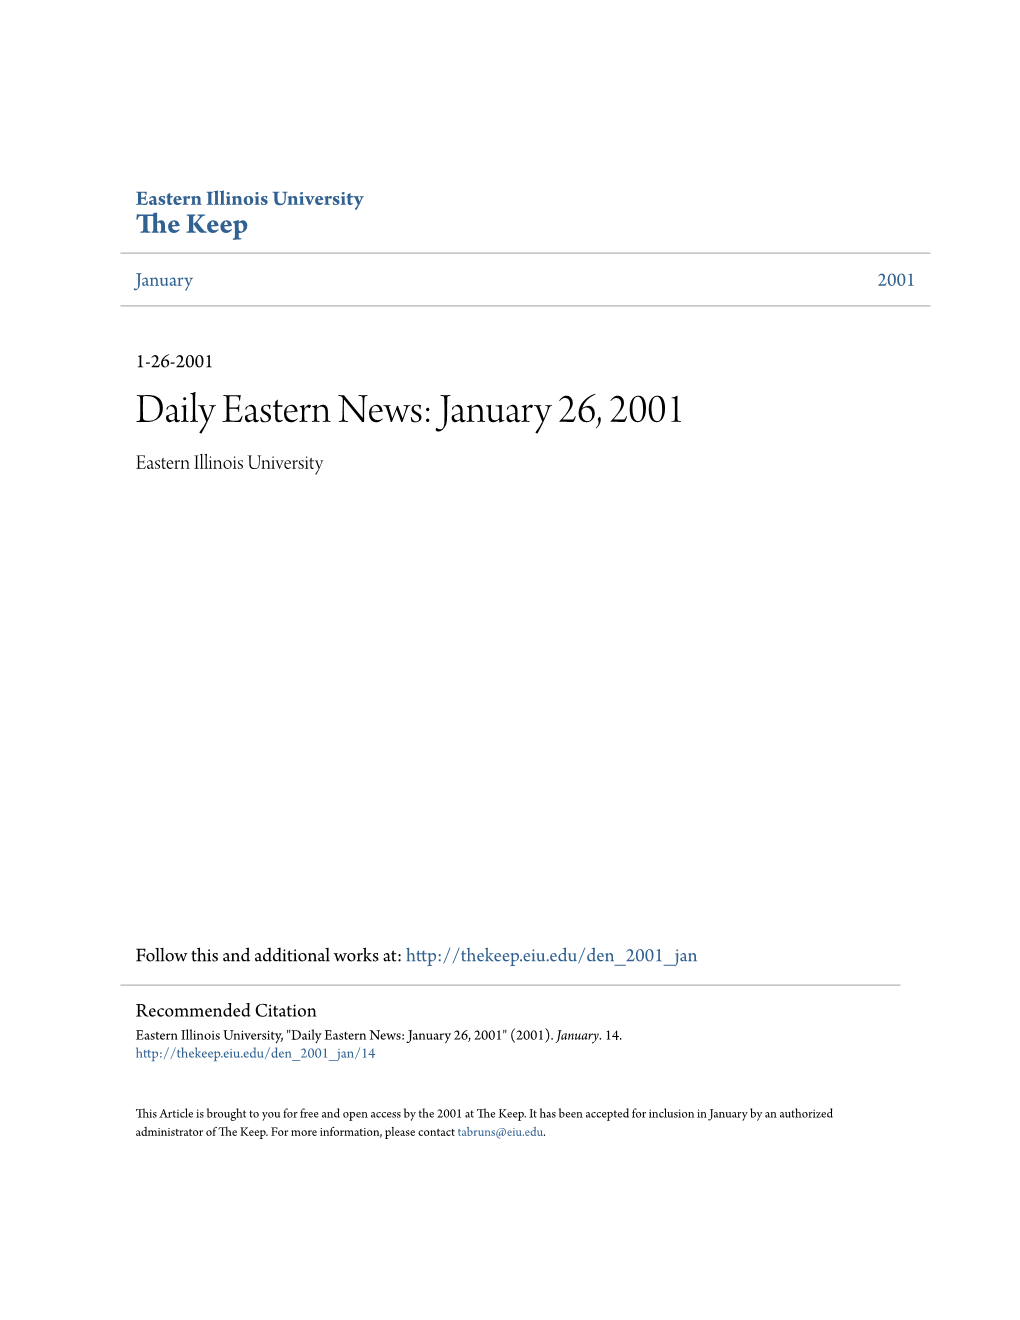 Eastern News: January 26, 2001 Eastern Illinois University